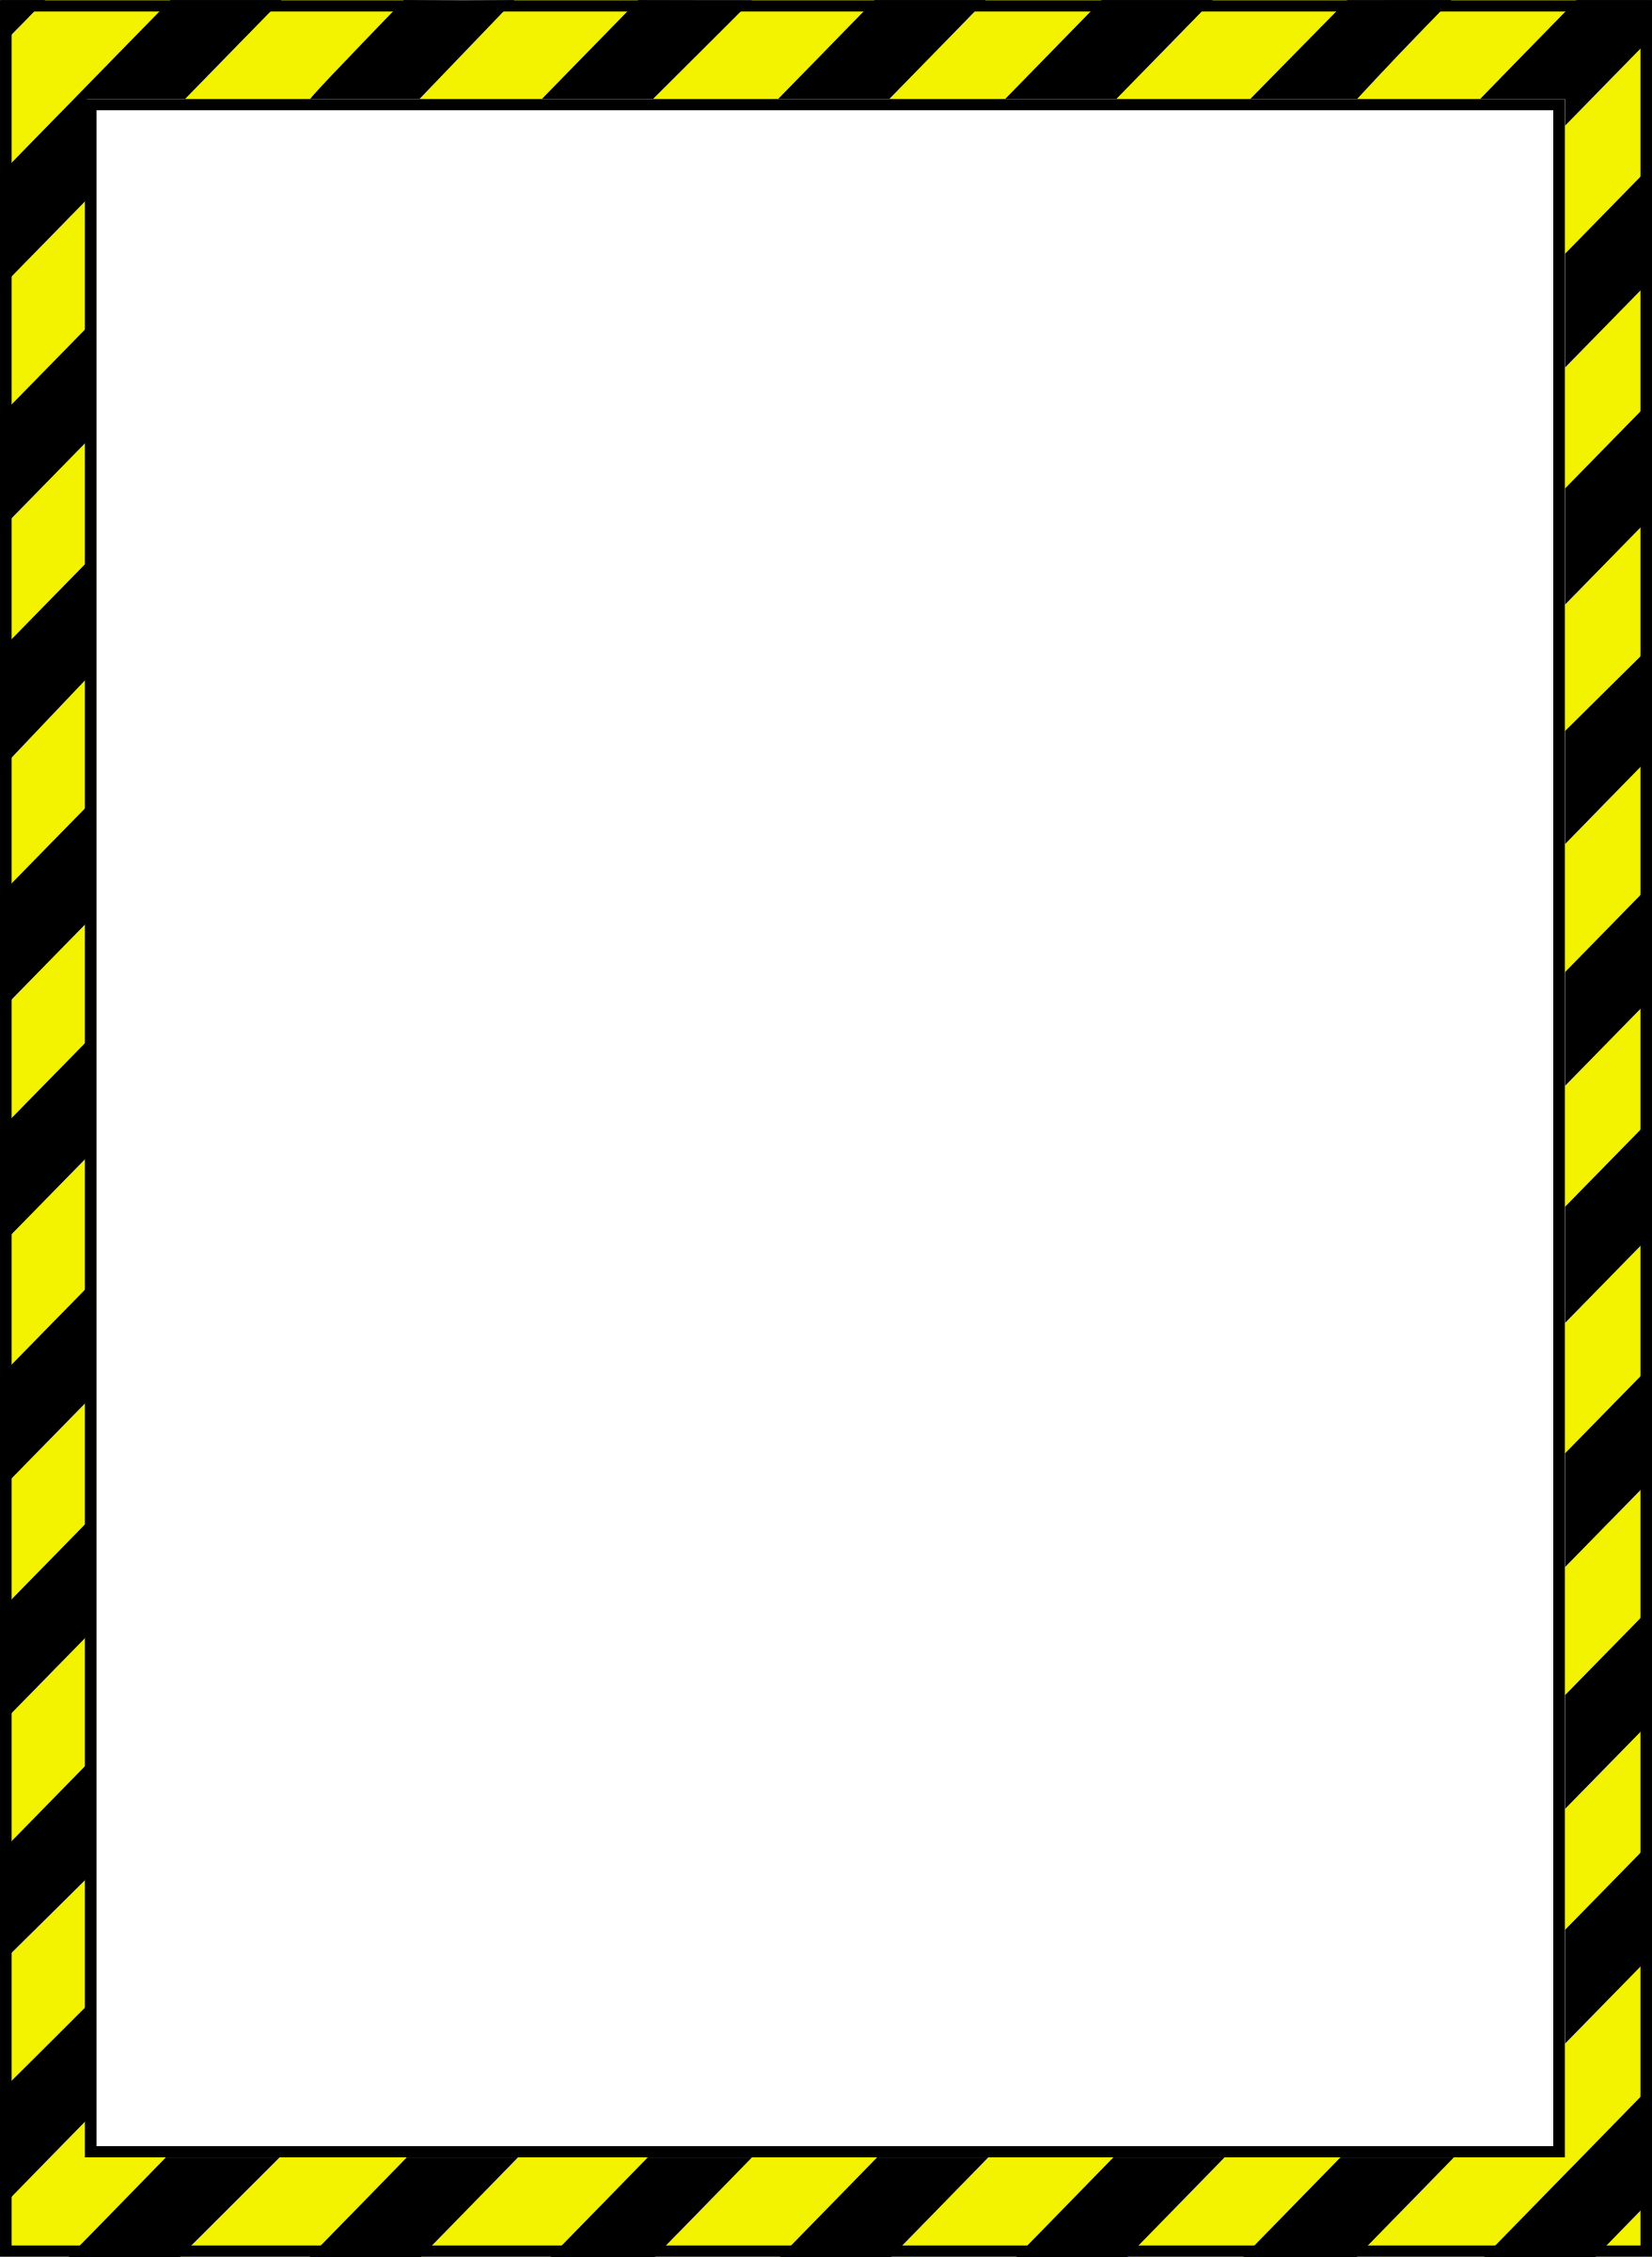 Warning border clip art